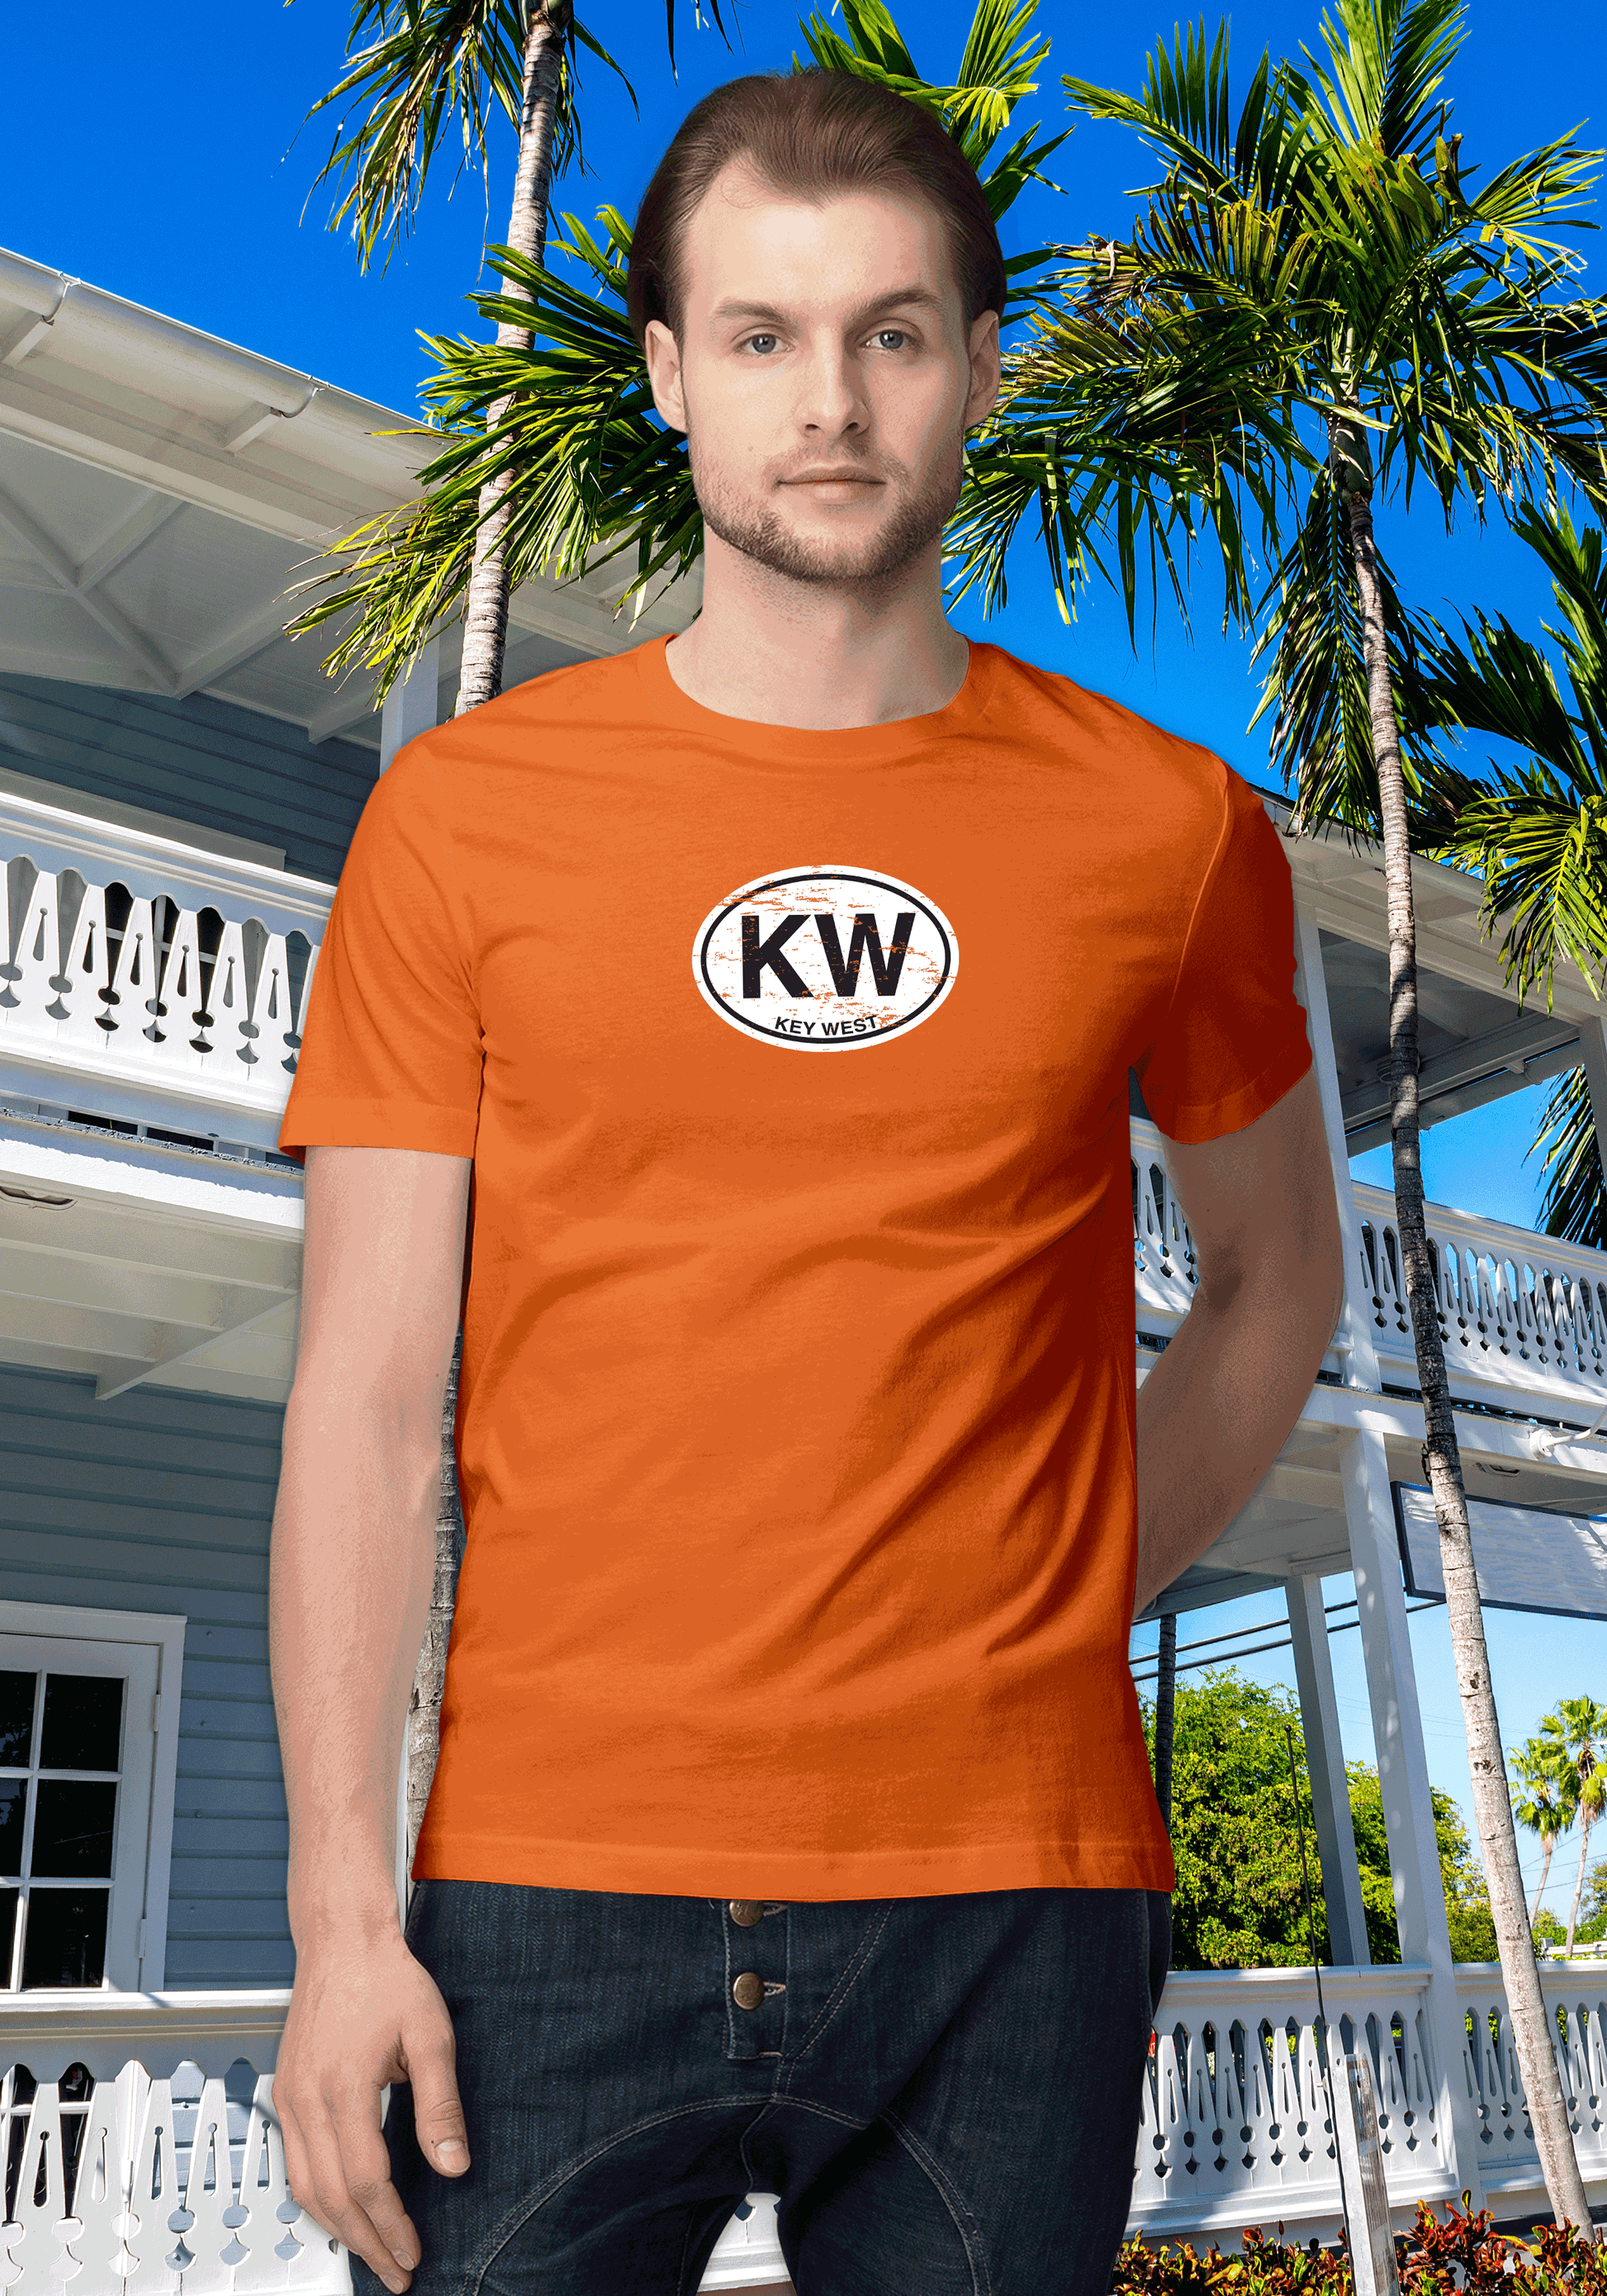 Key West Men's Classic T-Shirt Souvenir Gift - My Destination Location